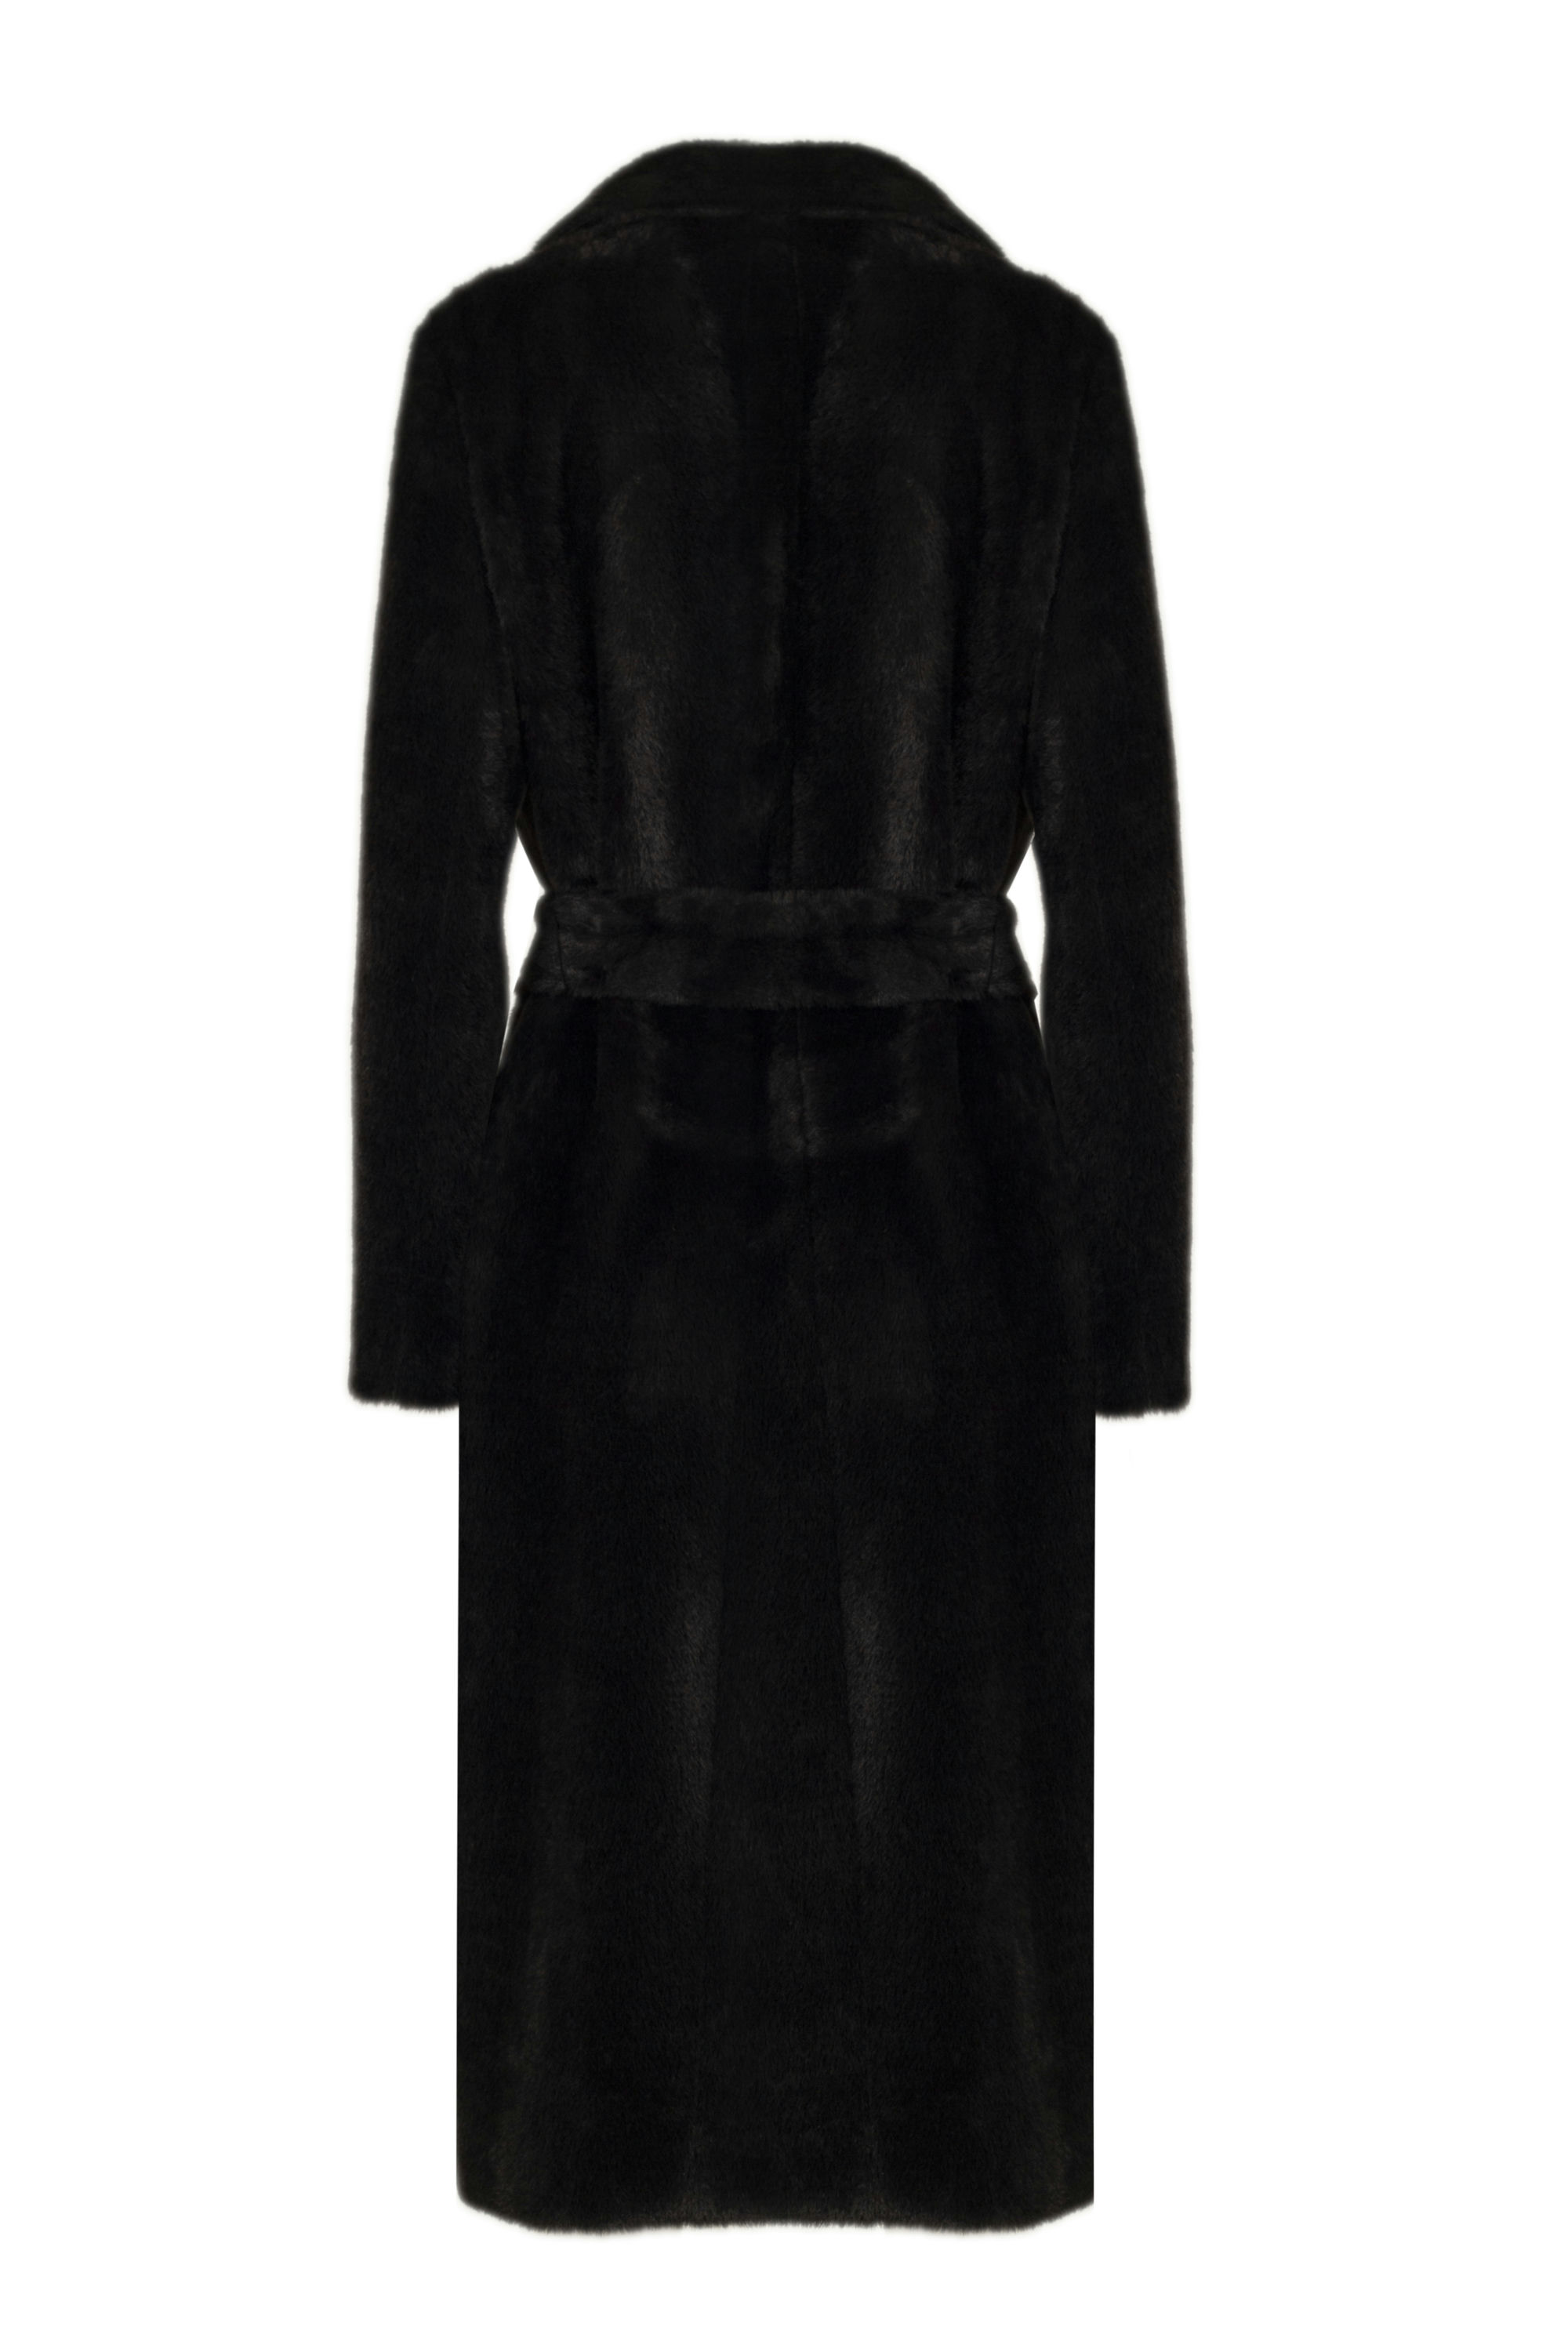 Пальто женское демисезонное 1-13053-2. Фото 3.